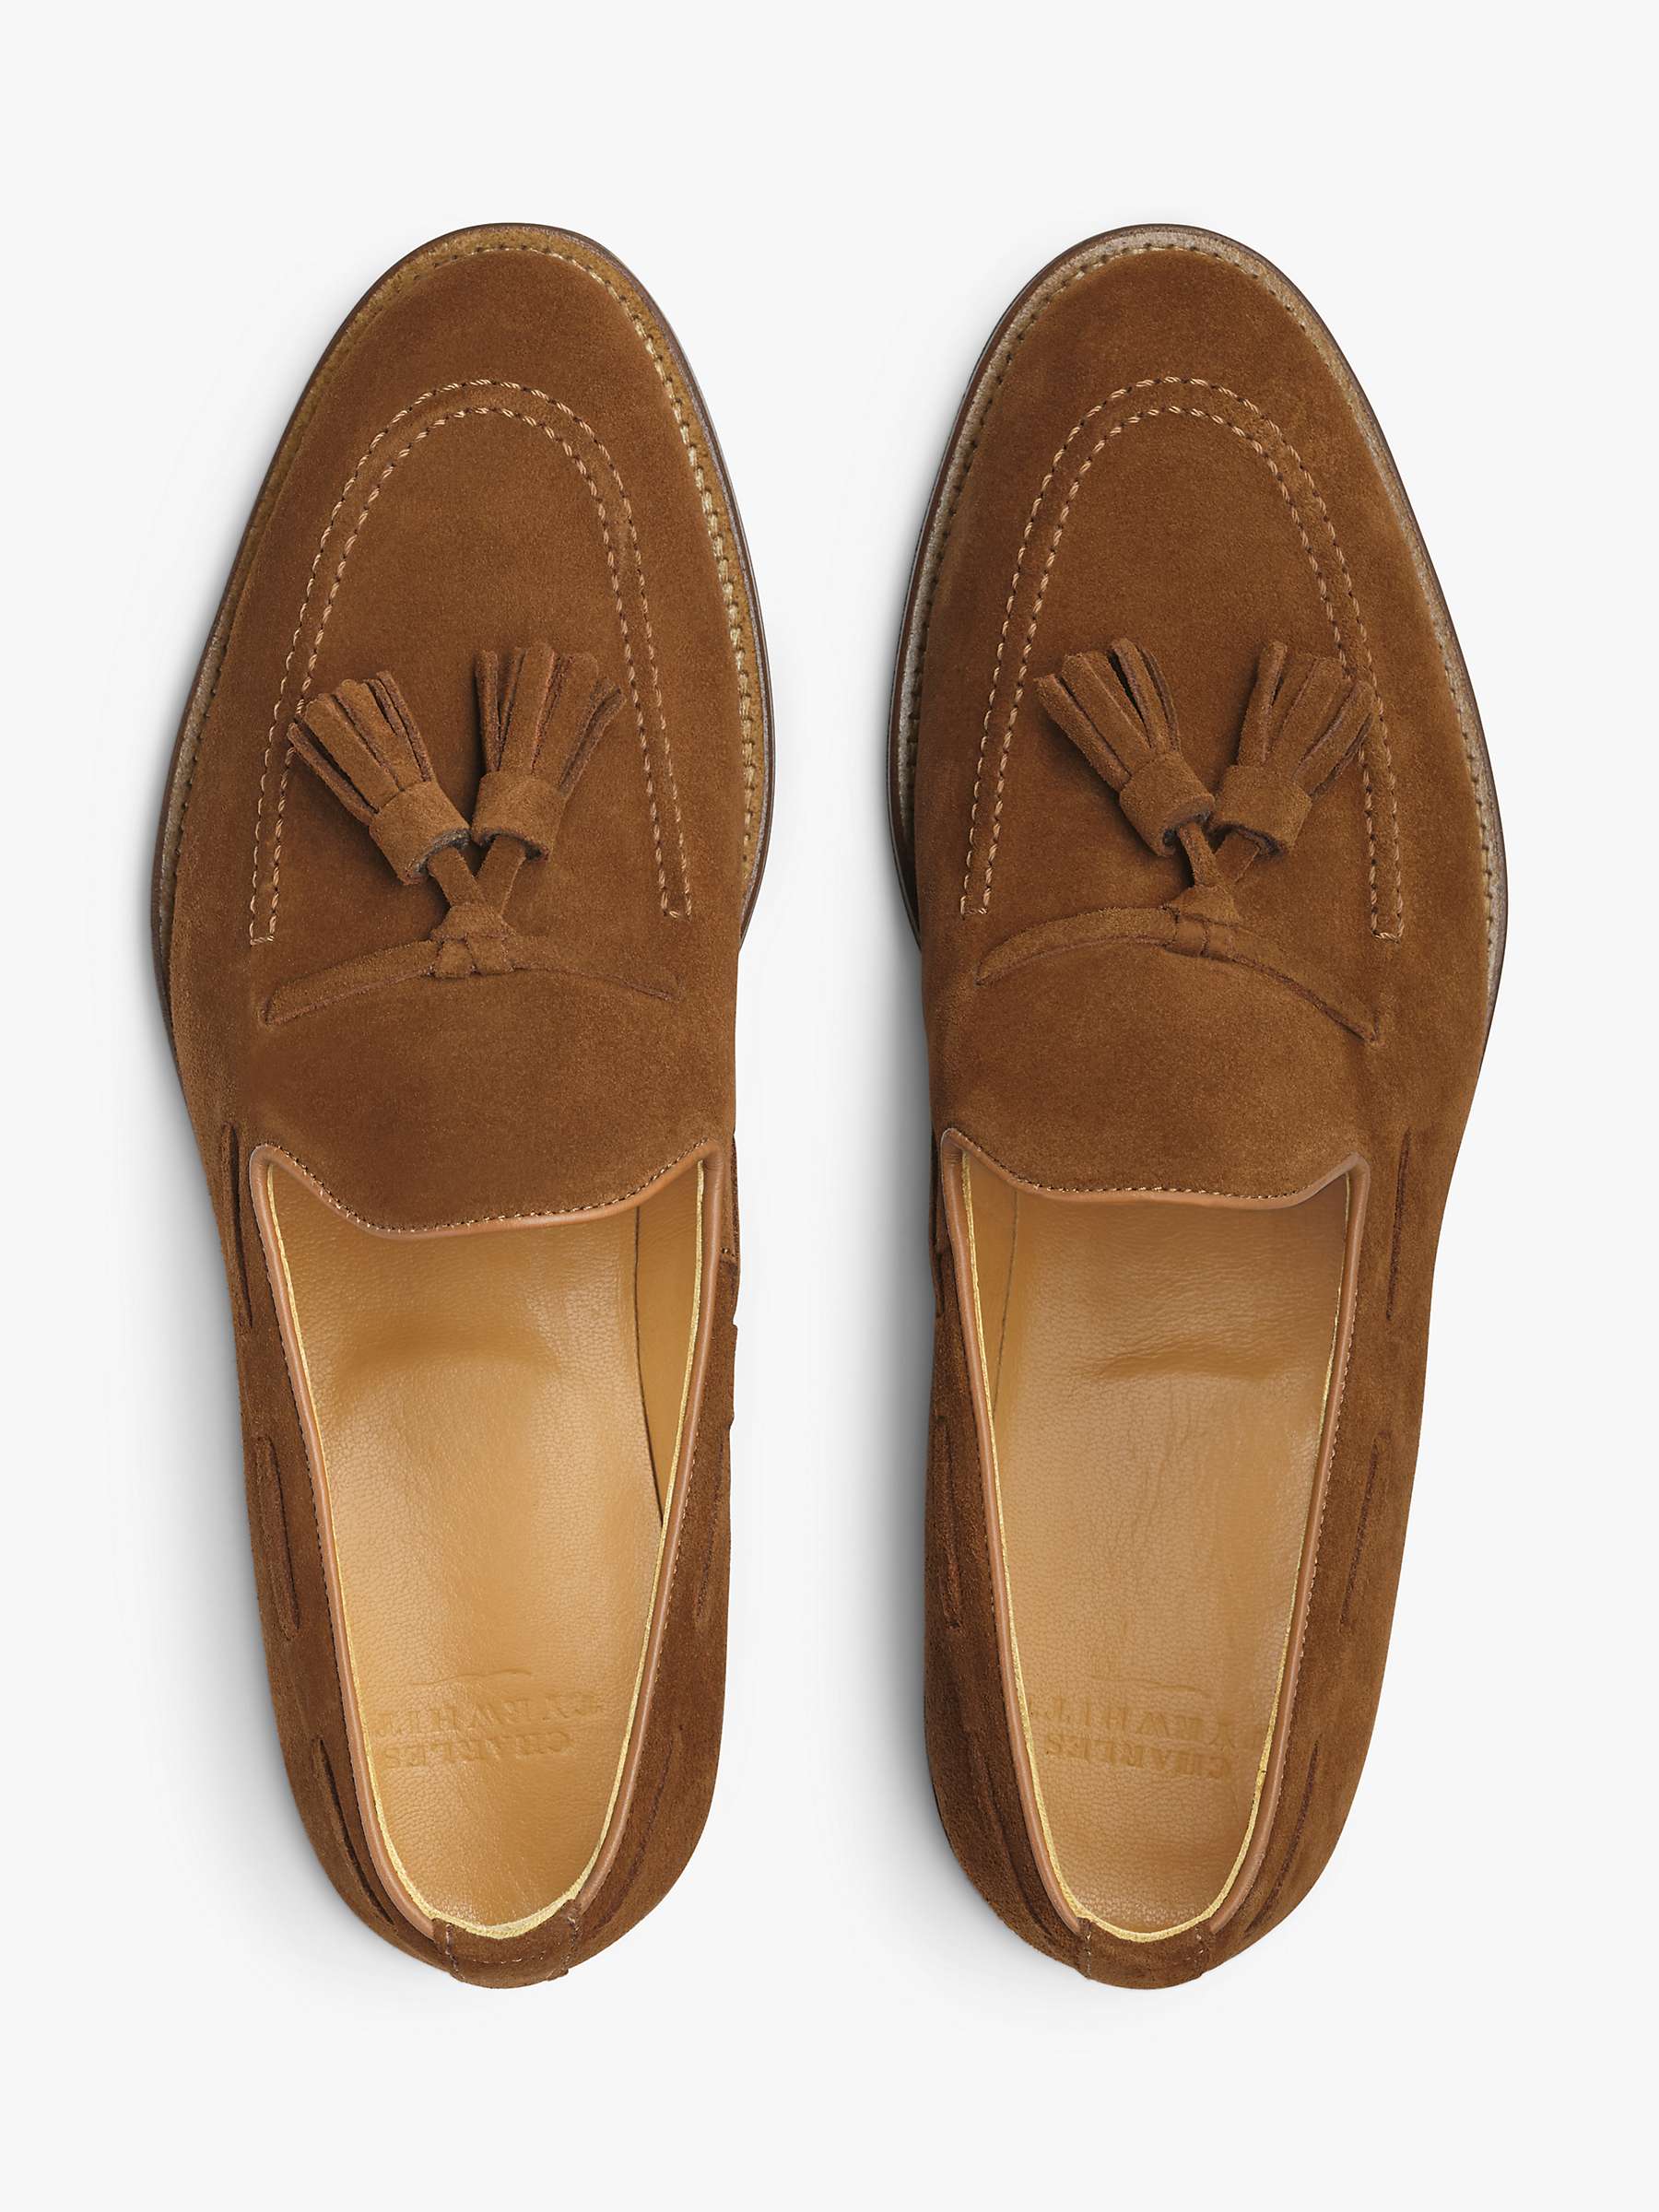 Buy Charles Tyrwhitt Tassel Loafers, Chestnut Brown Online at johnlewis.com